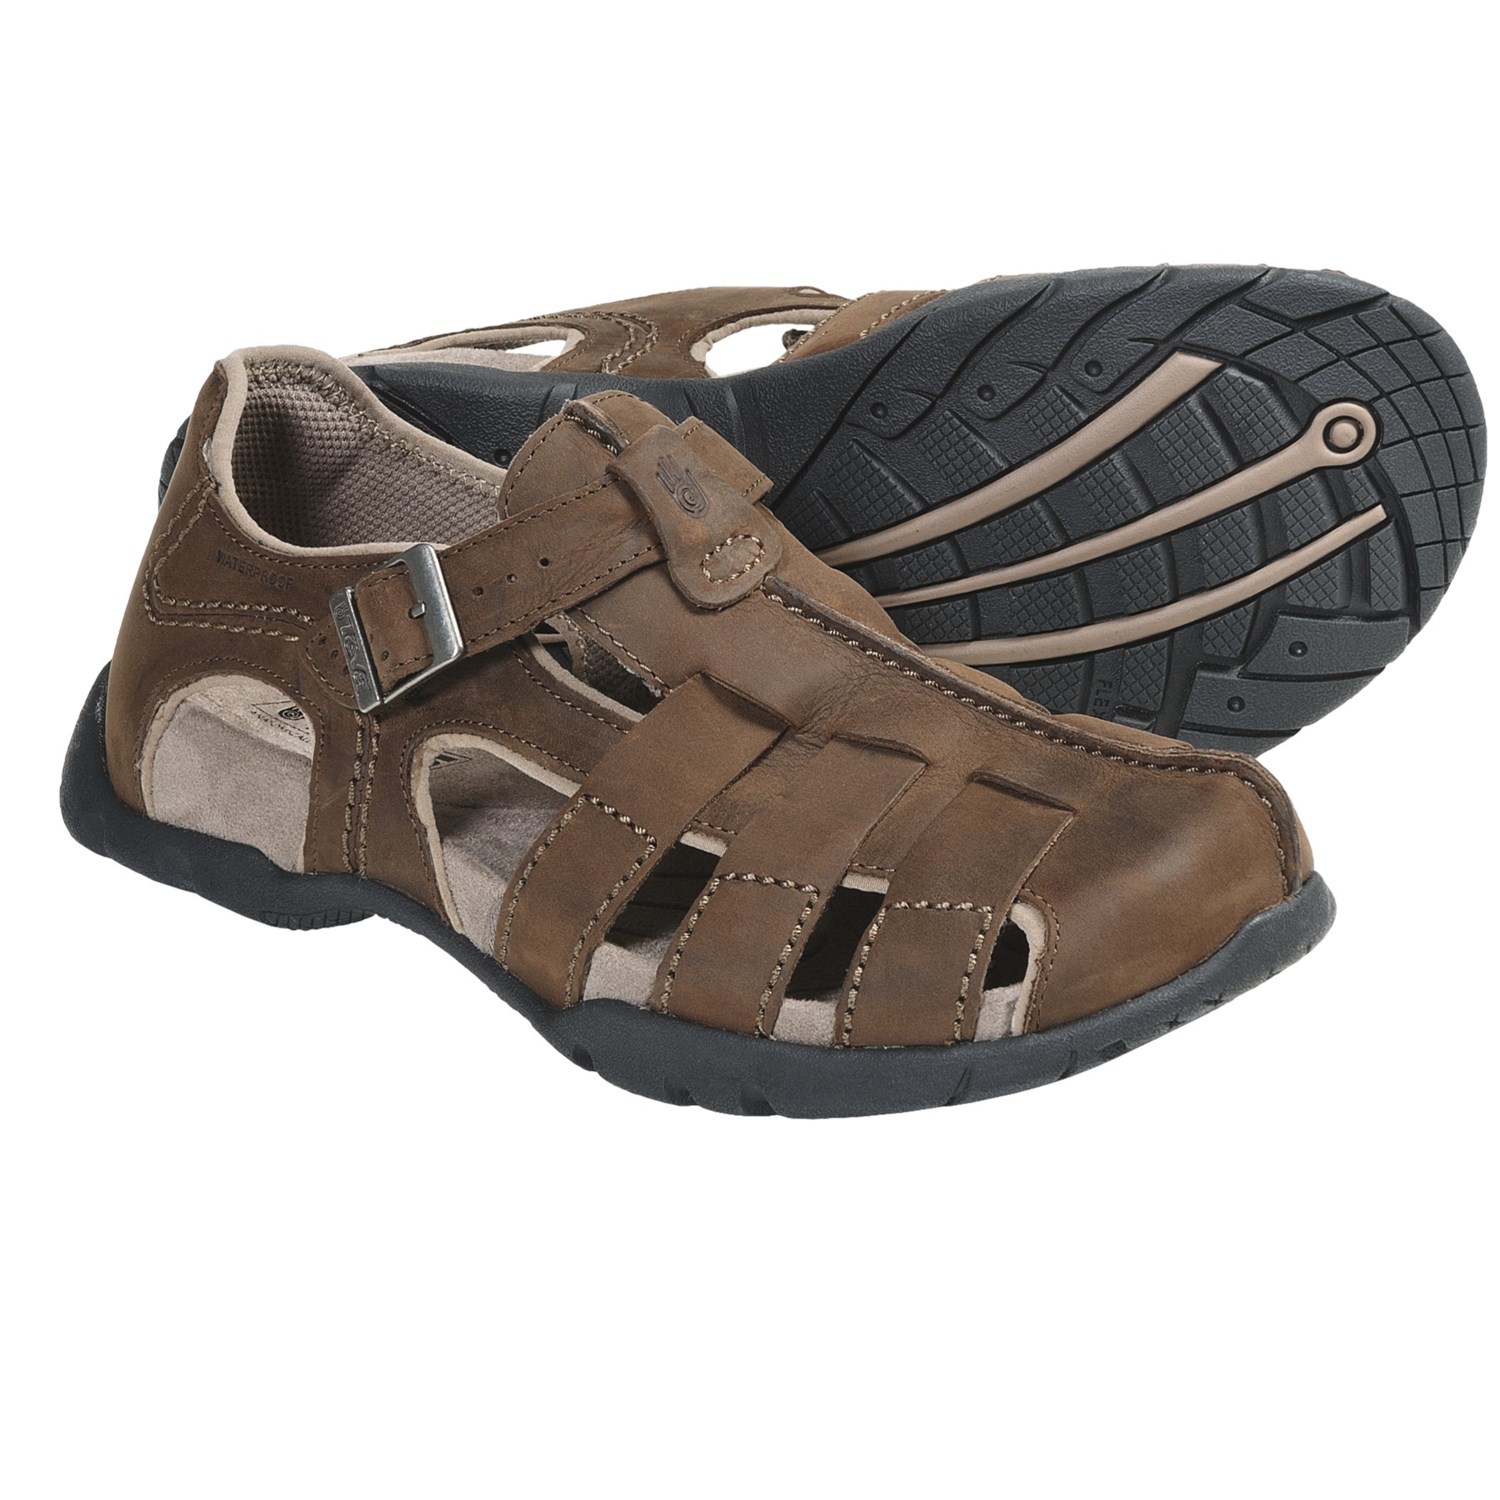 Teva Cardenas Fisherman Sandals (For Men) - Save 33%